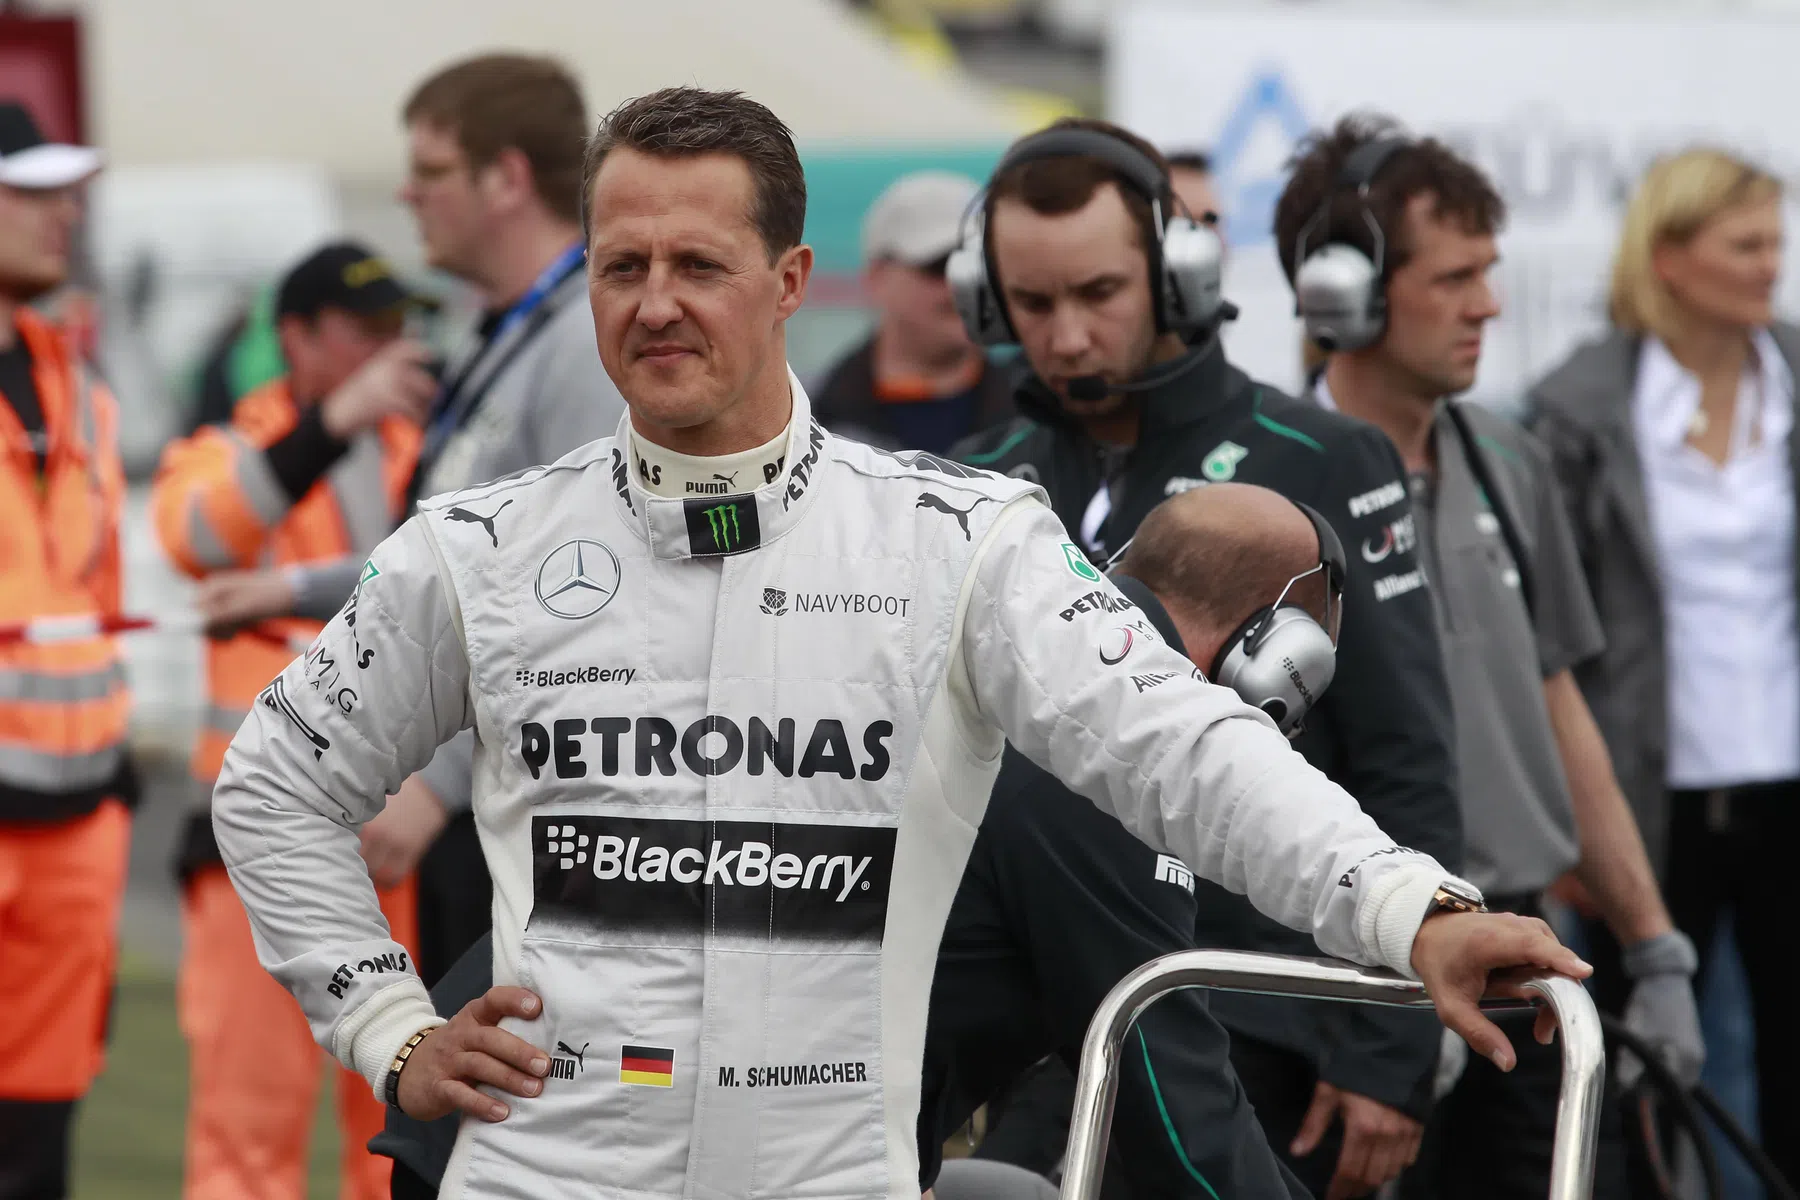 Former Ferrari team boss Todt on Michael Schumacher situation